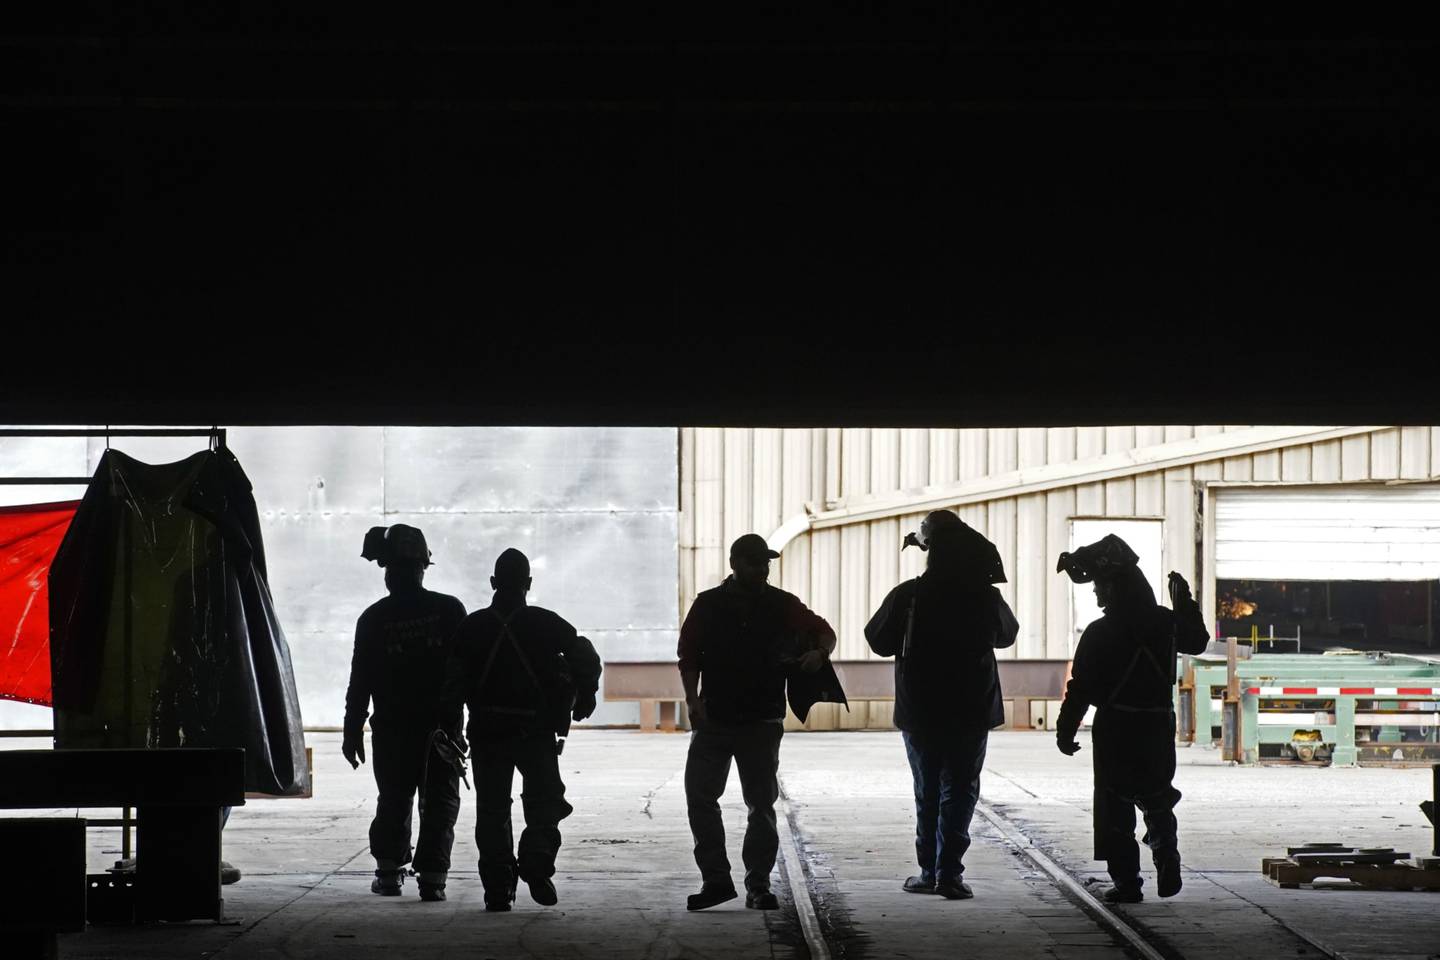 Trabajadores salen de un edificio en las instalaciones de SME Steel Contractors en West Jordan, Utah, Estados Unidos, el 1 de febrero de 2021.